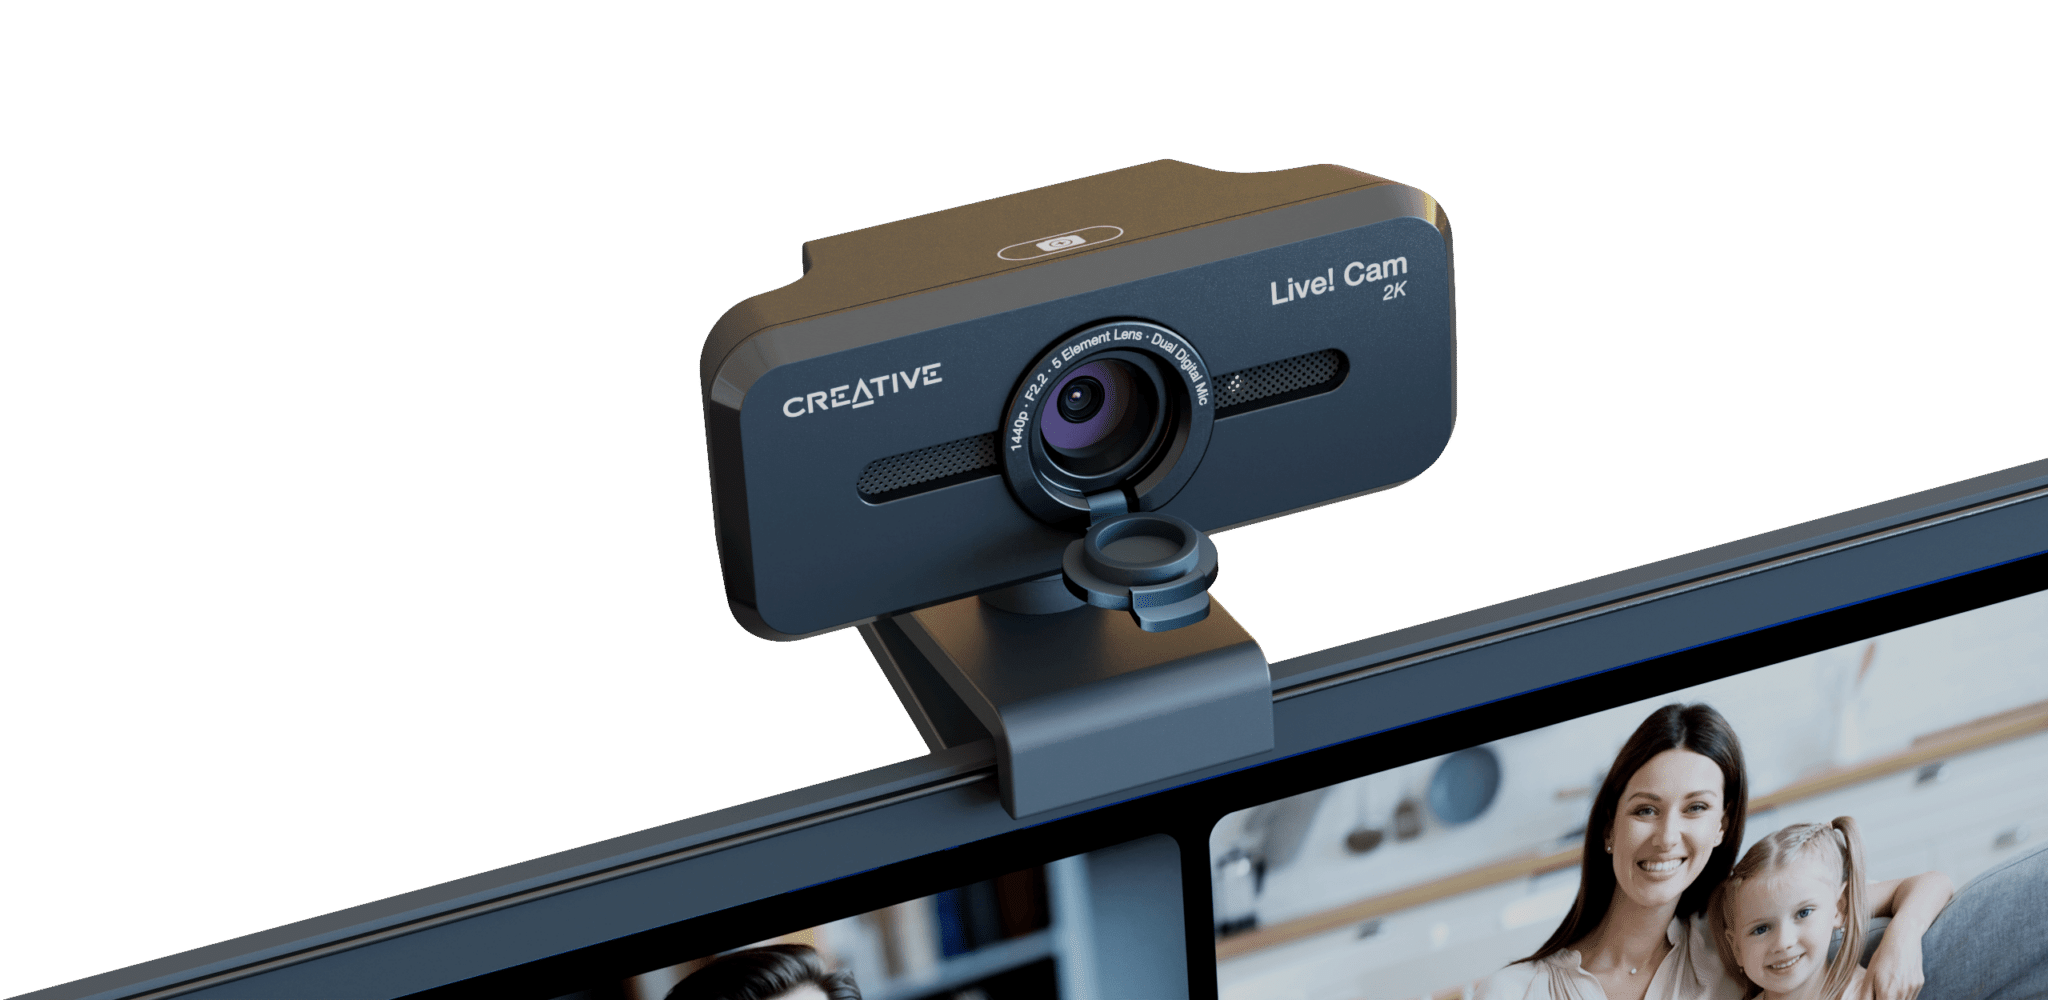 Tuto – Comment utiliser un smartphone comme webcam pour PC - Les Numériques